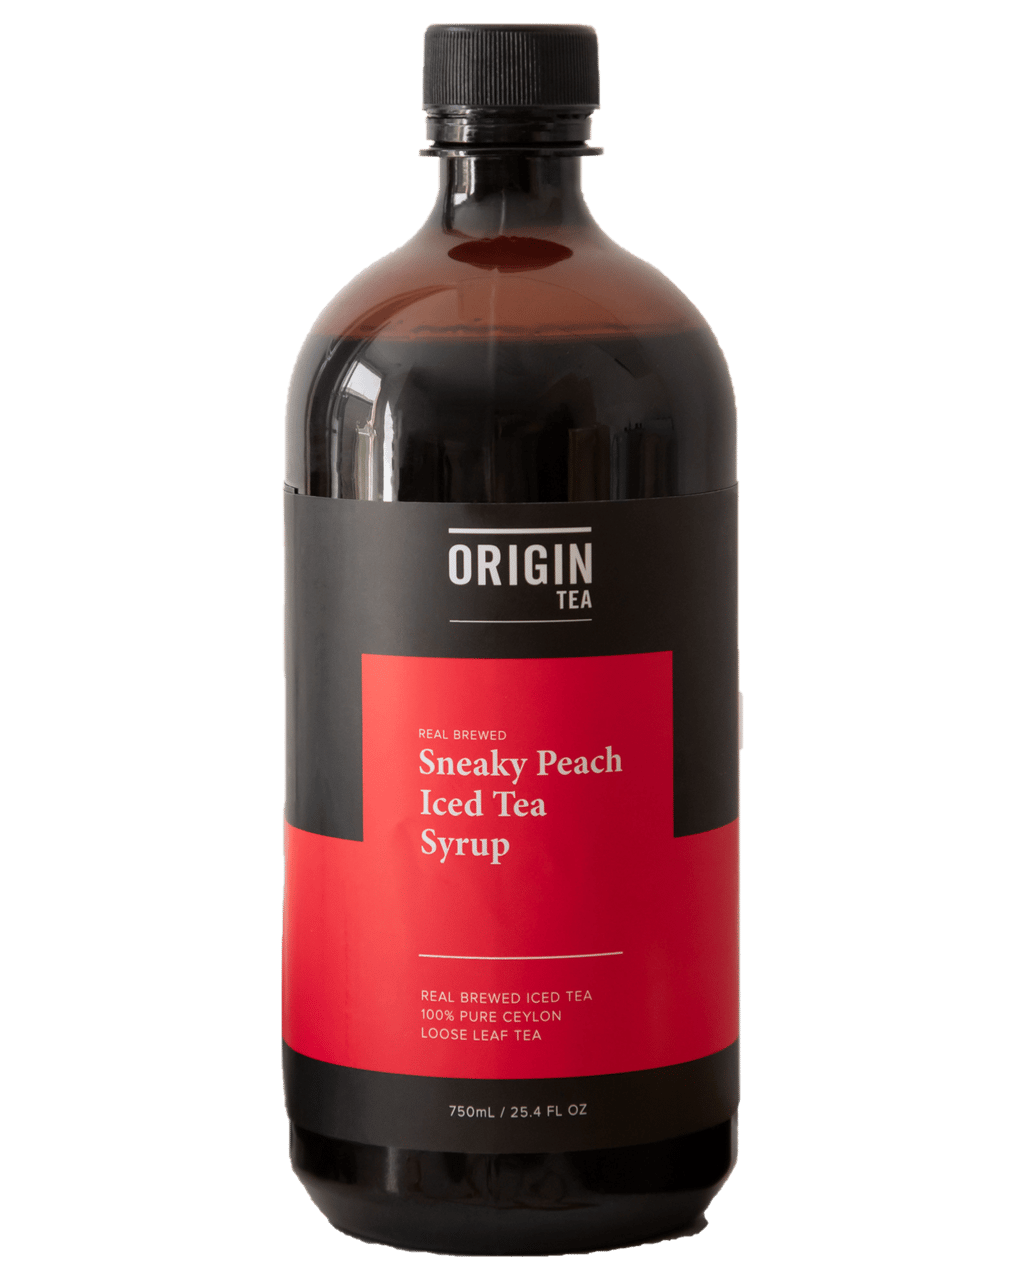 Origin Tea Sneaky Peach Iced Tea Syrup 750ml Boozy